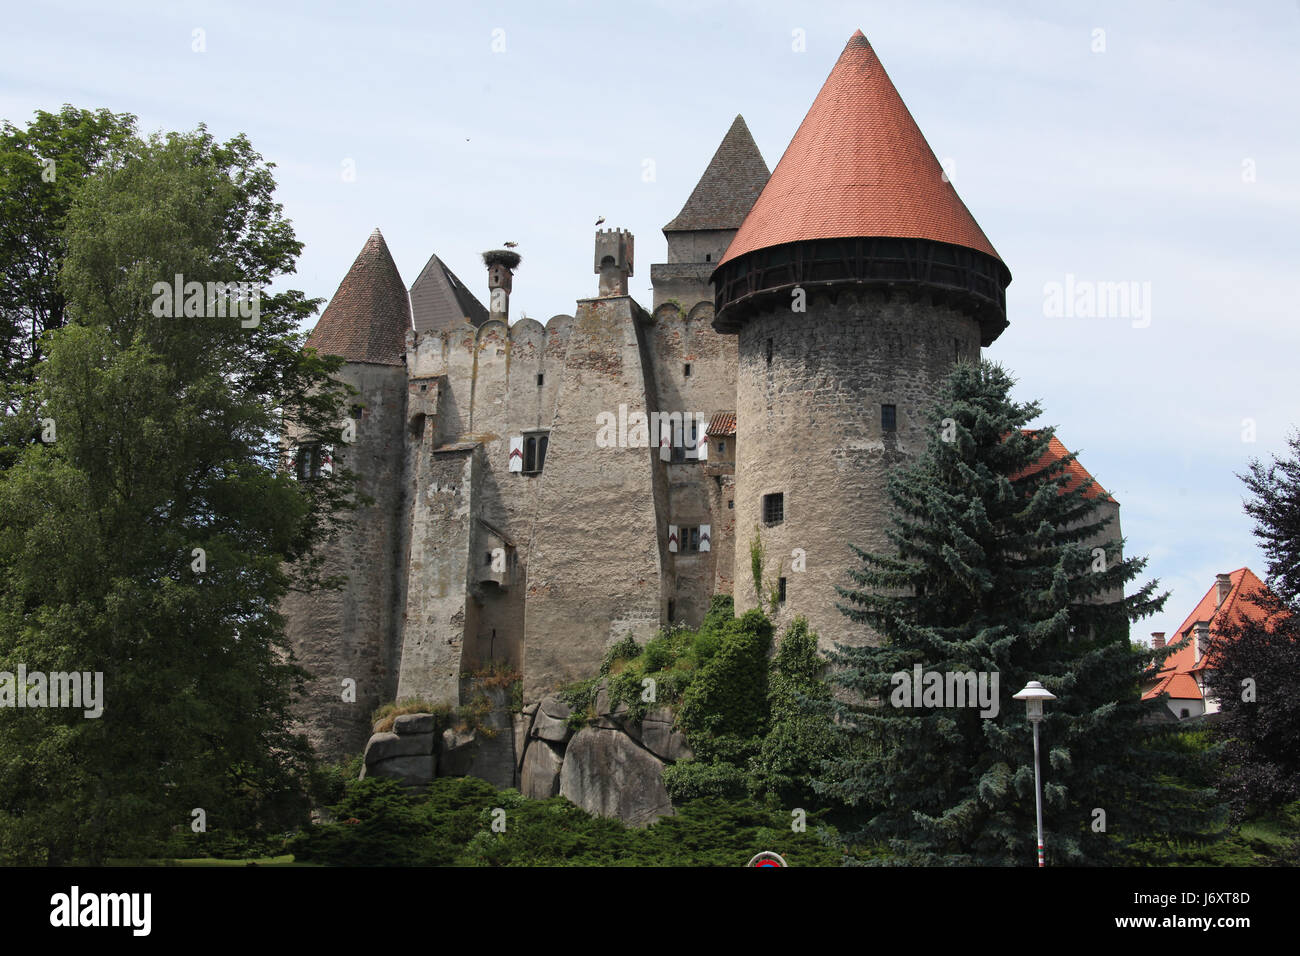 austrians europe European Union lower austria forest-quarter chateau castle Stock Photo